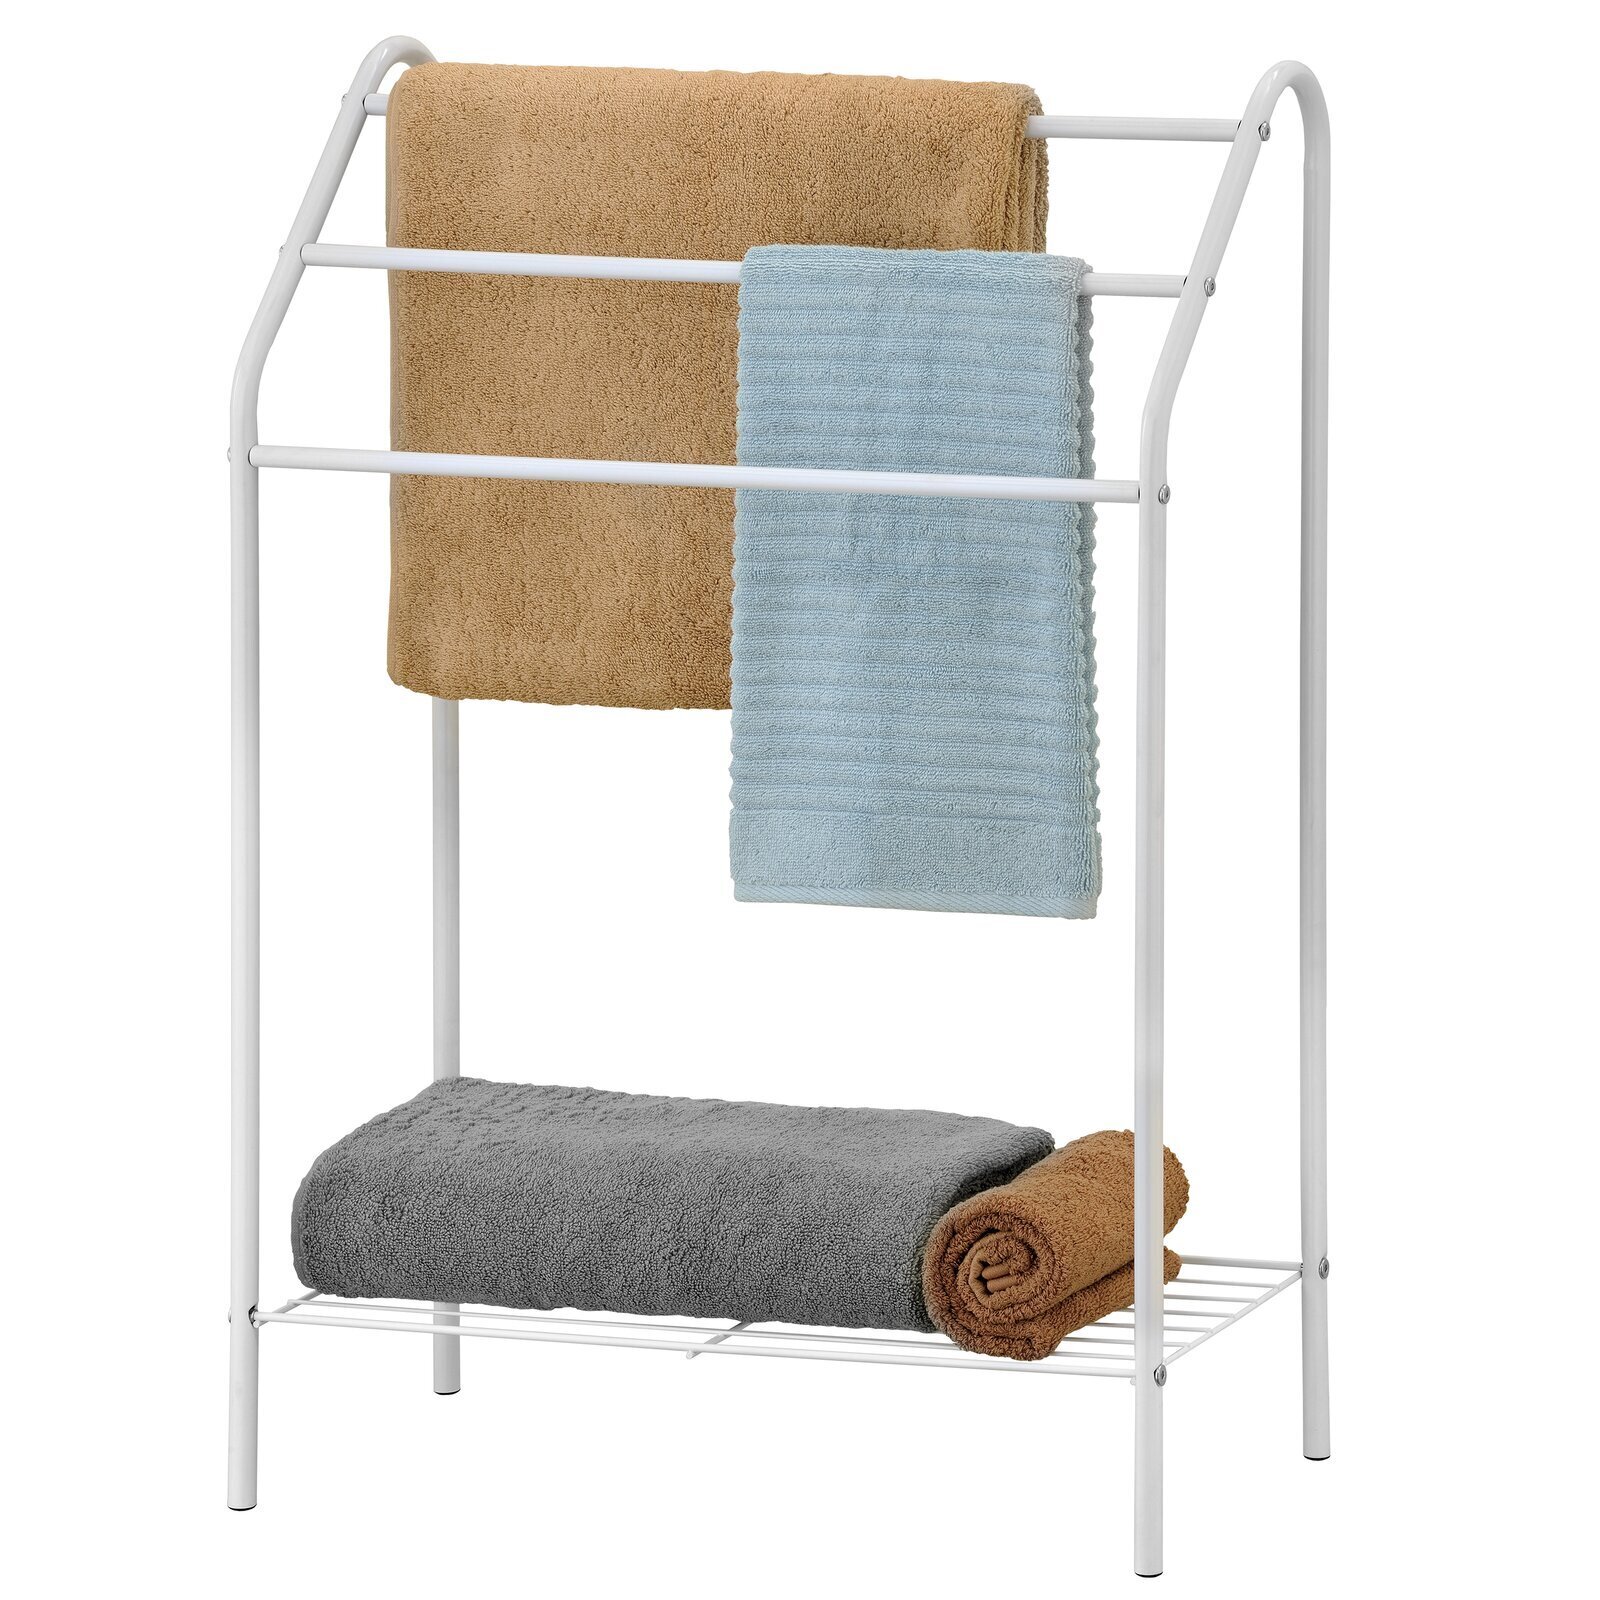 White Towel Rack With Wire Shelf 